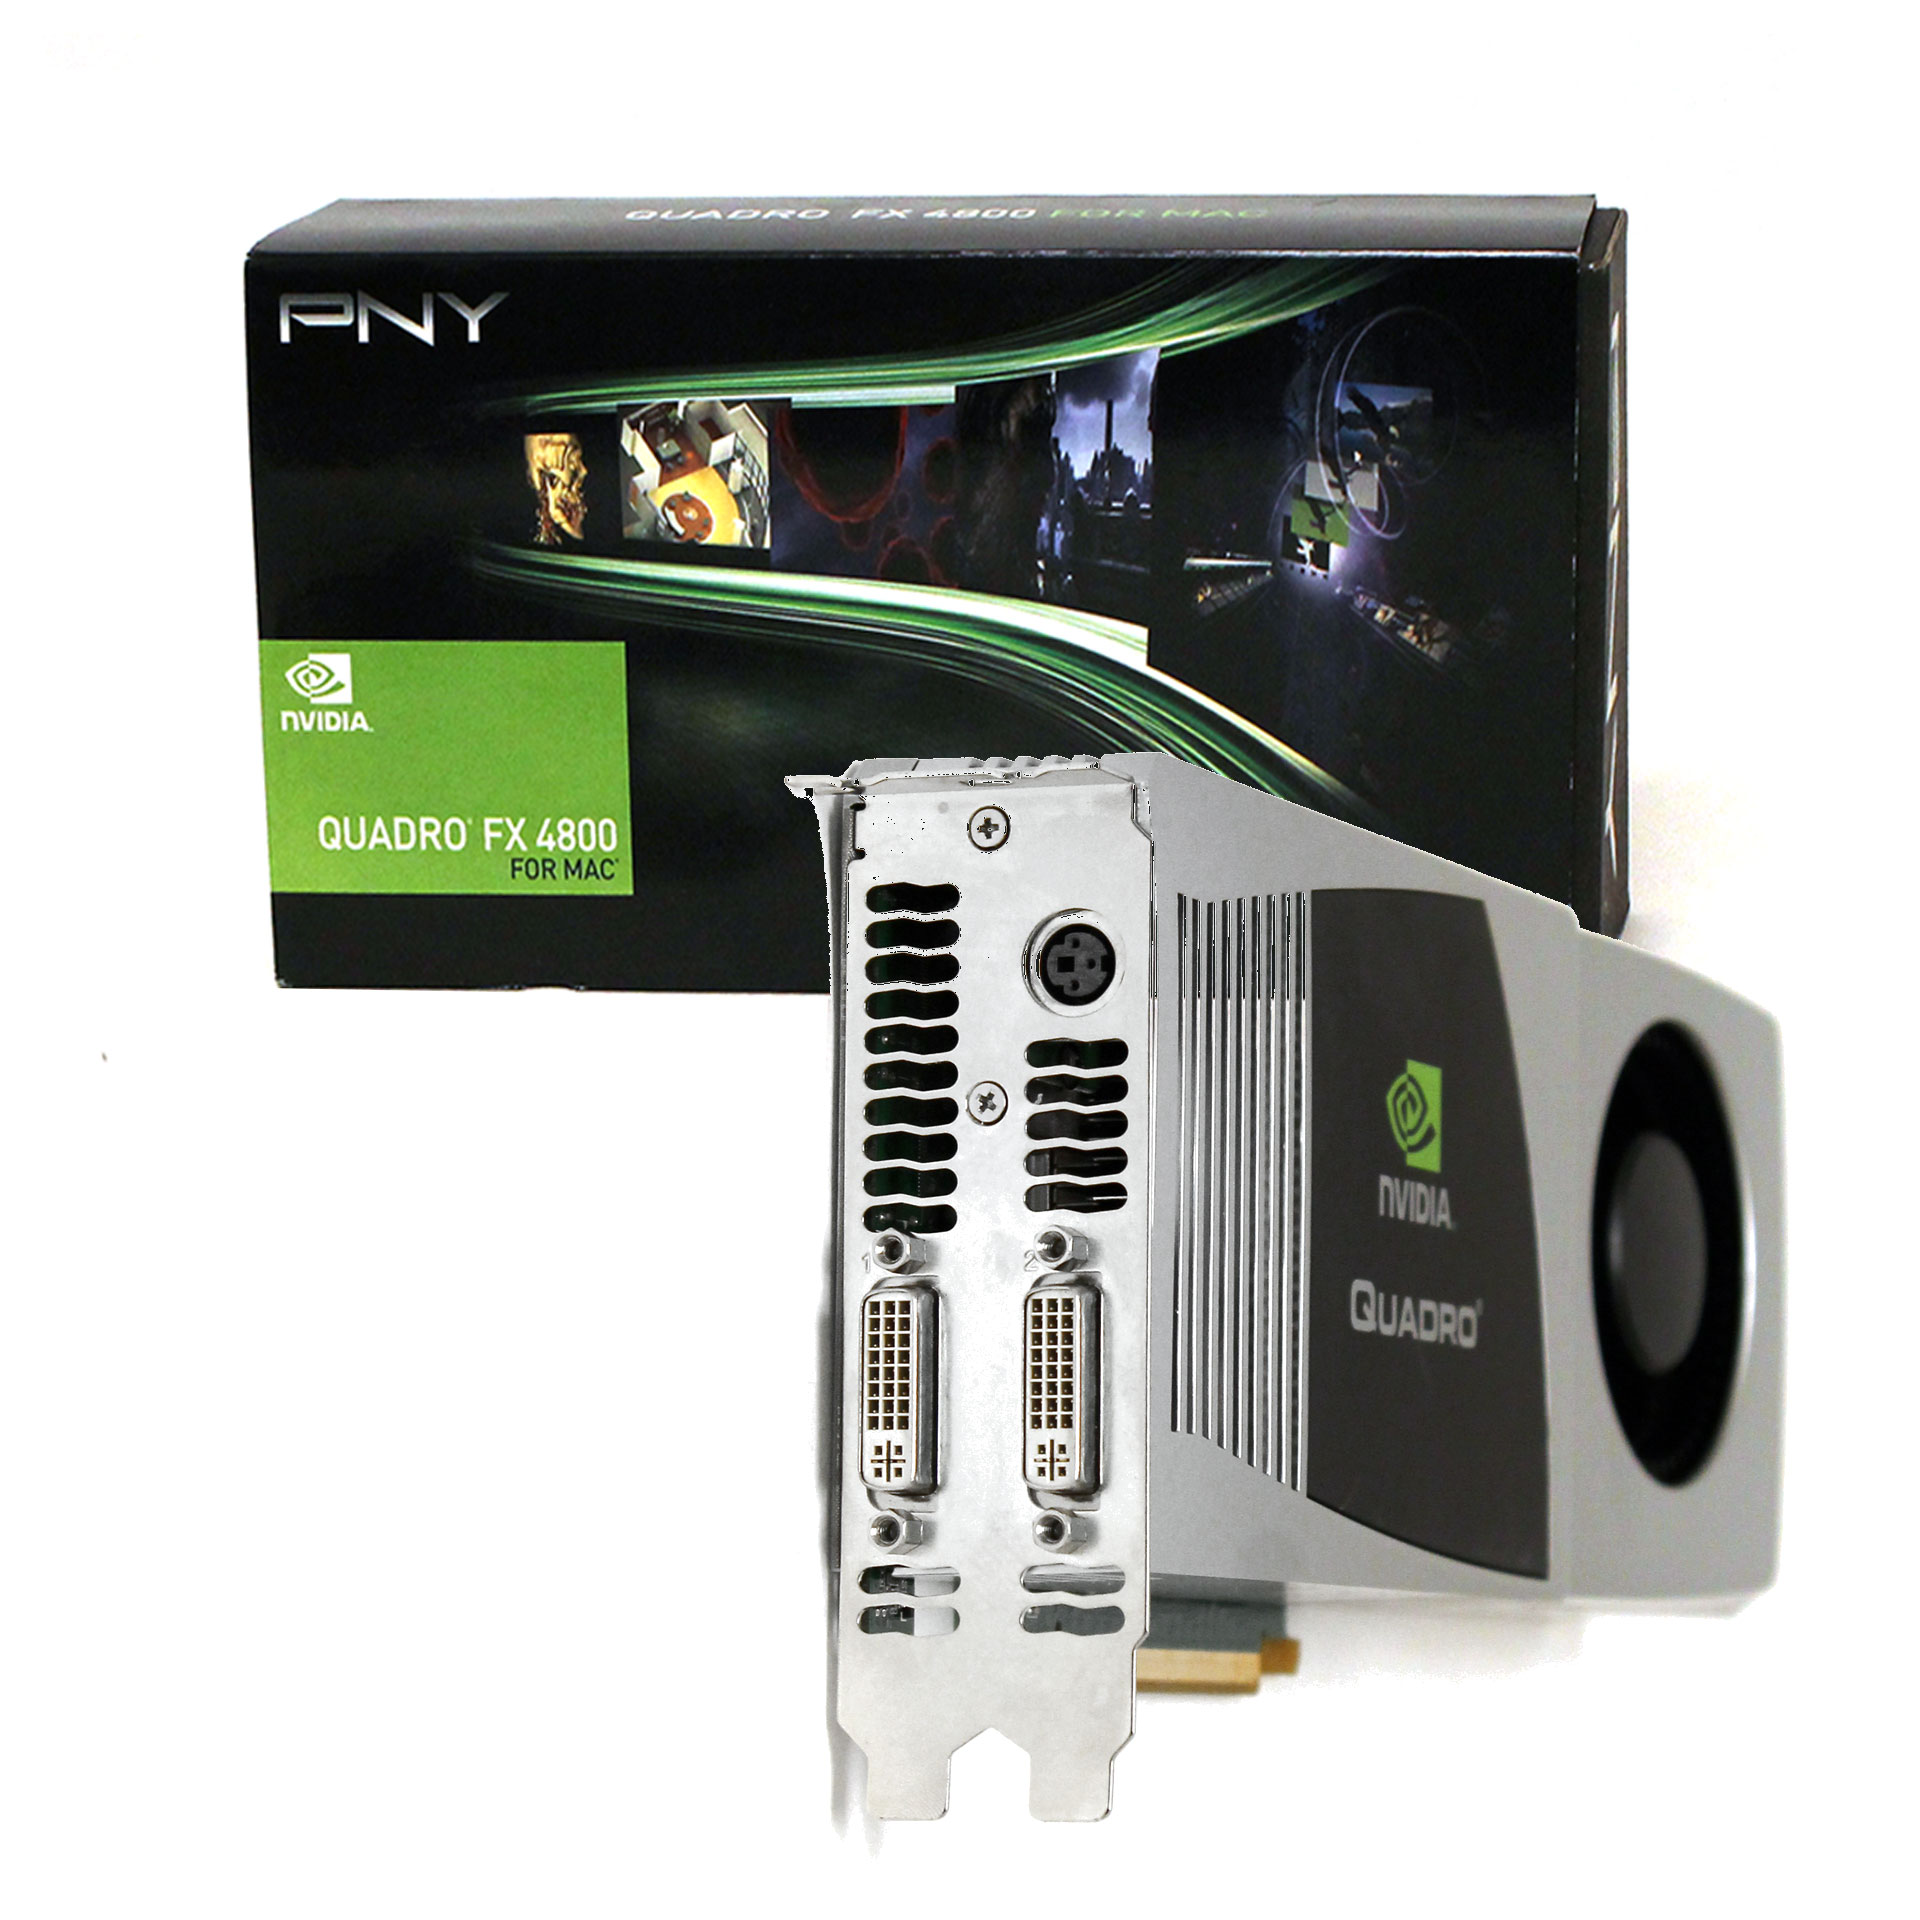 PNY nVidia Quadro FX4800 for MAC Video Card VCQFX4800MACX16-PB